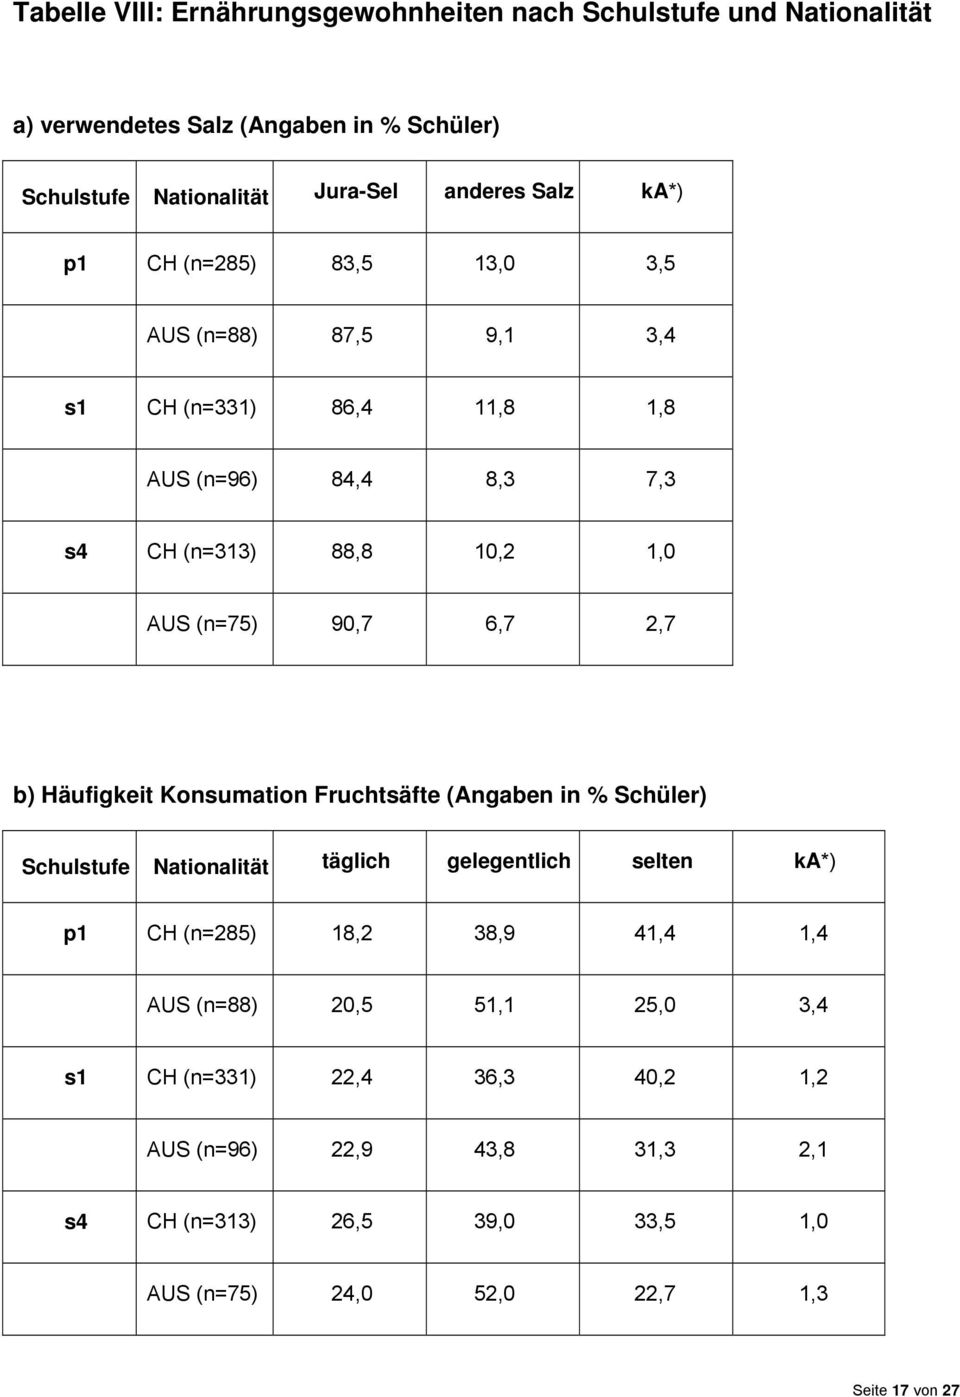 b) Häufigkeit Konsumation Fruchtsäfte (Angaben in % Schüler) Schulstufe Nationalität täglich gelegentlich selten ka*) p1 CH (n=285) 18,2 38,9 41,4 1,4 AUS